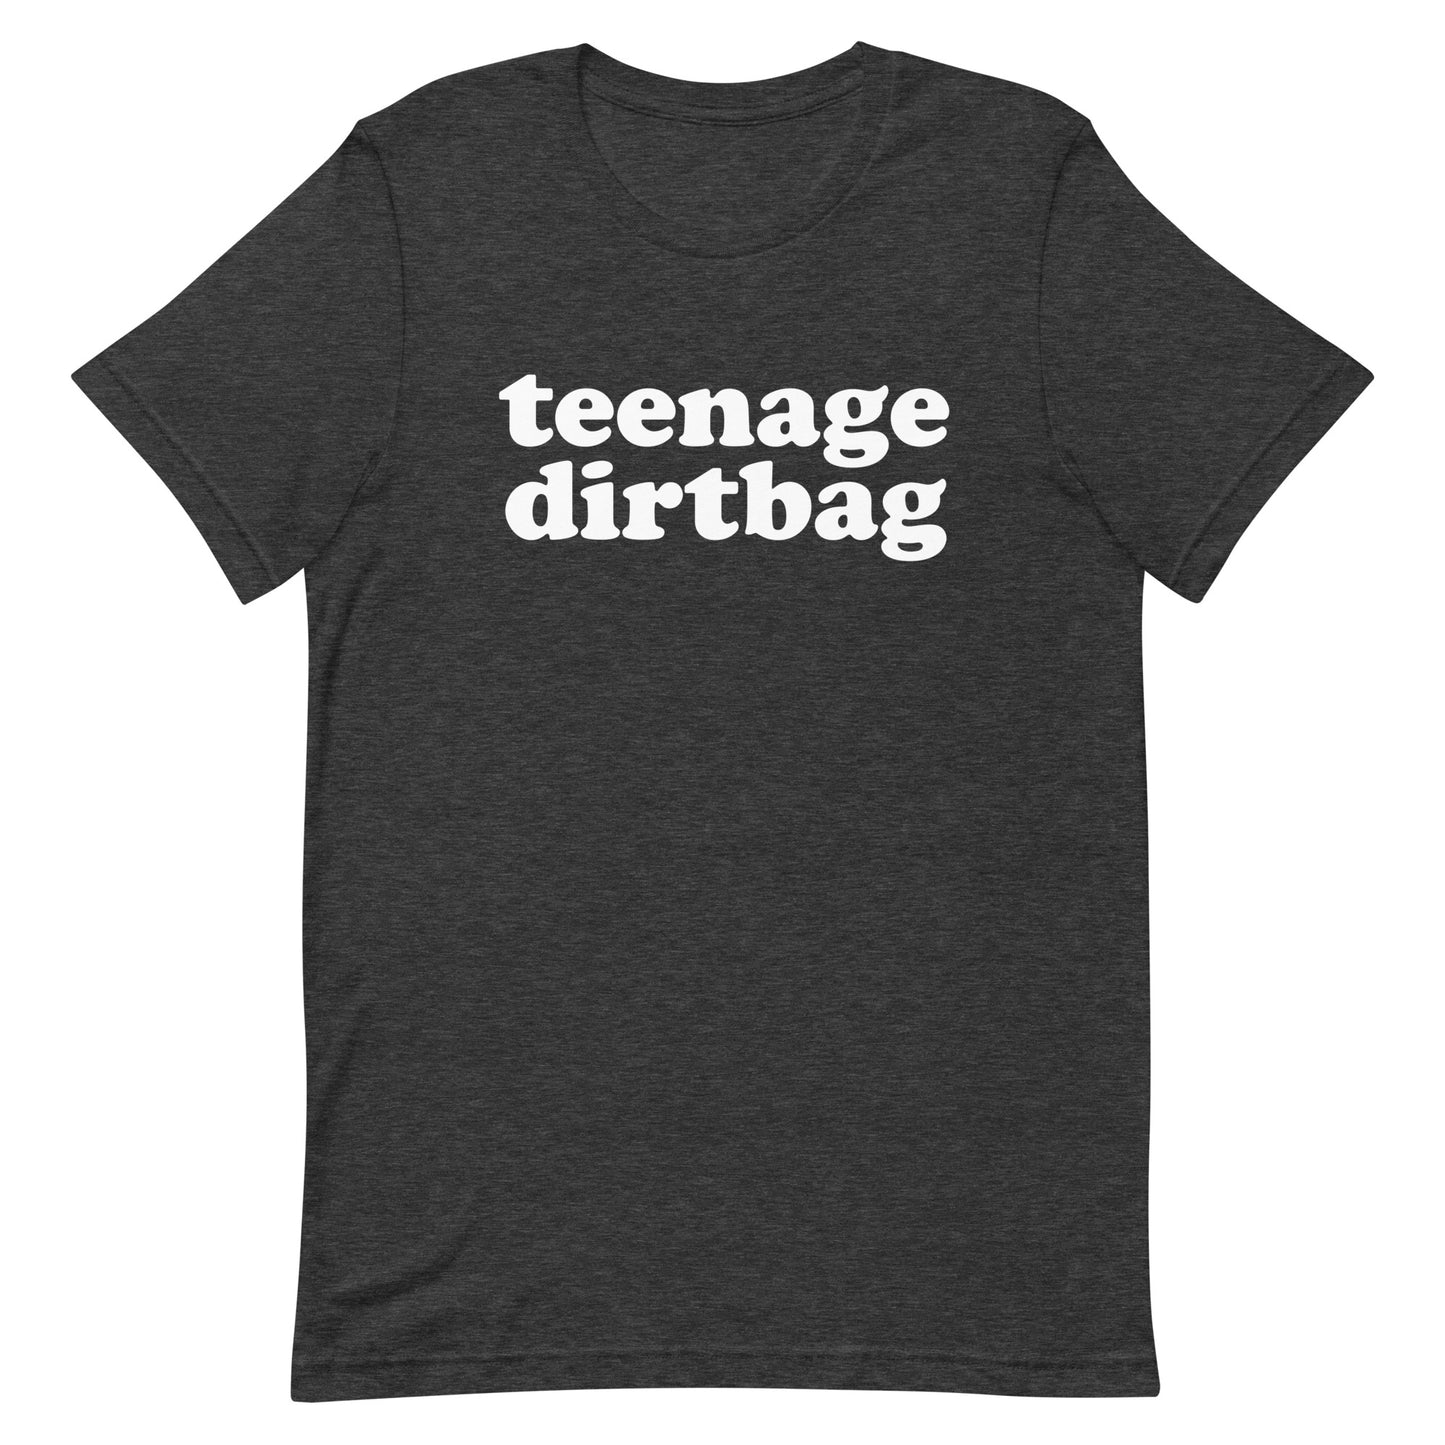 Teenage Dirtbag t-shirt